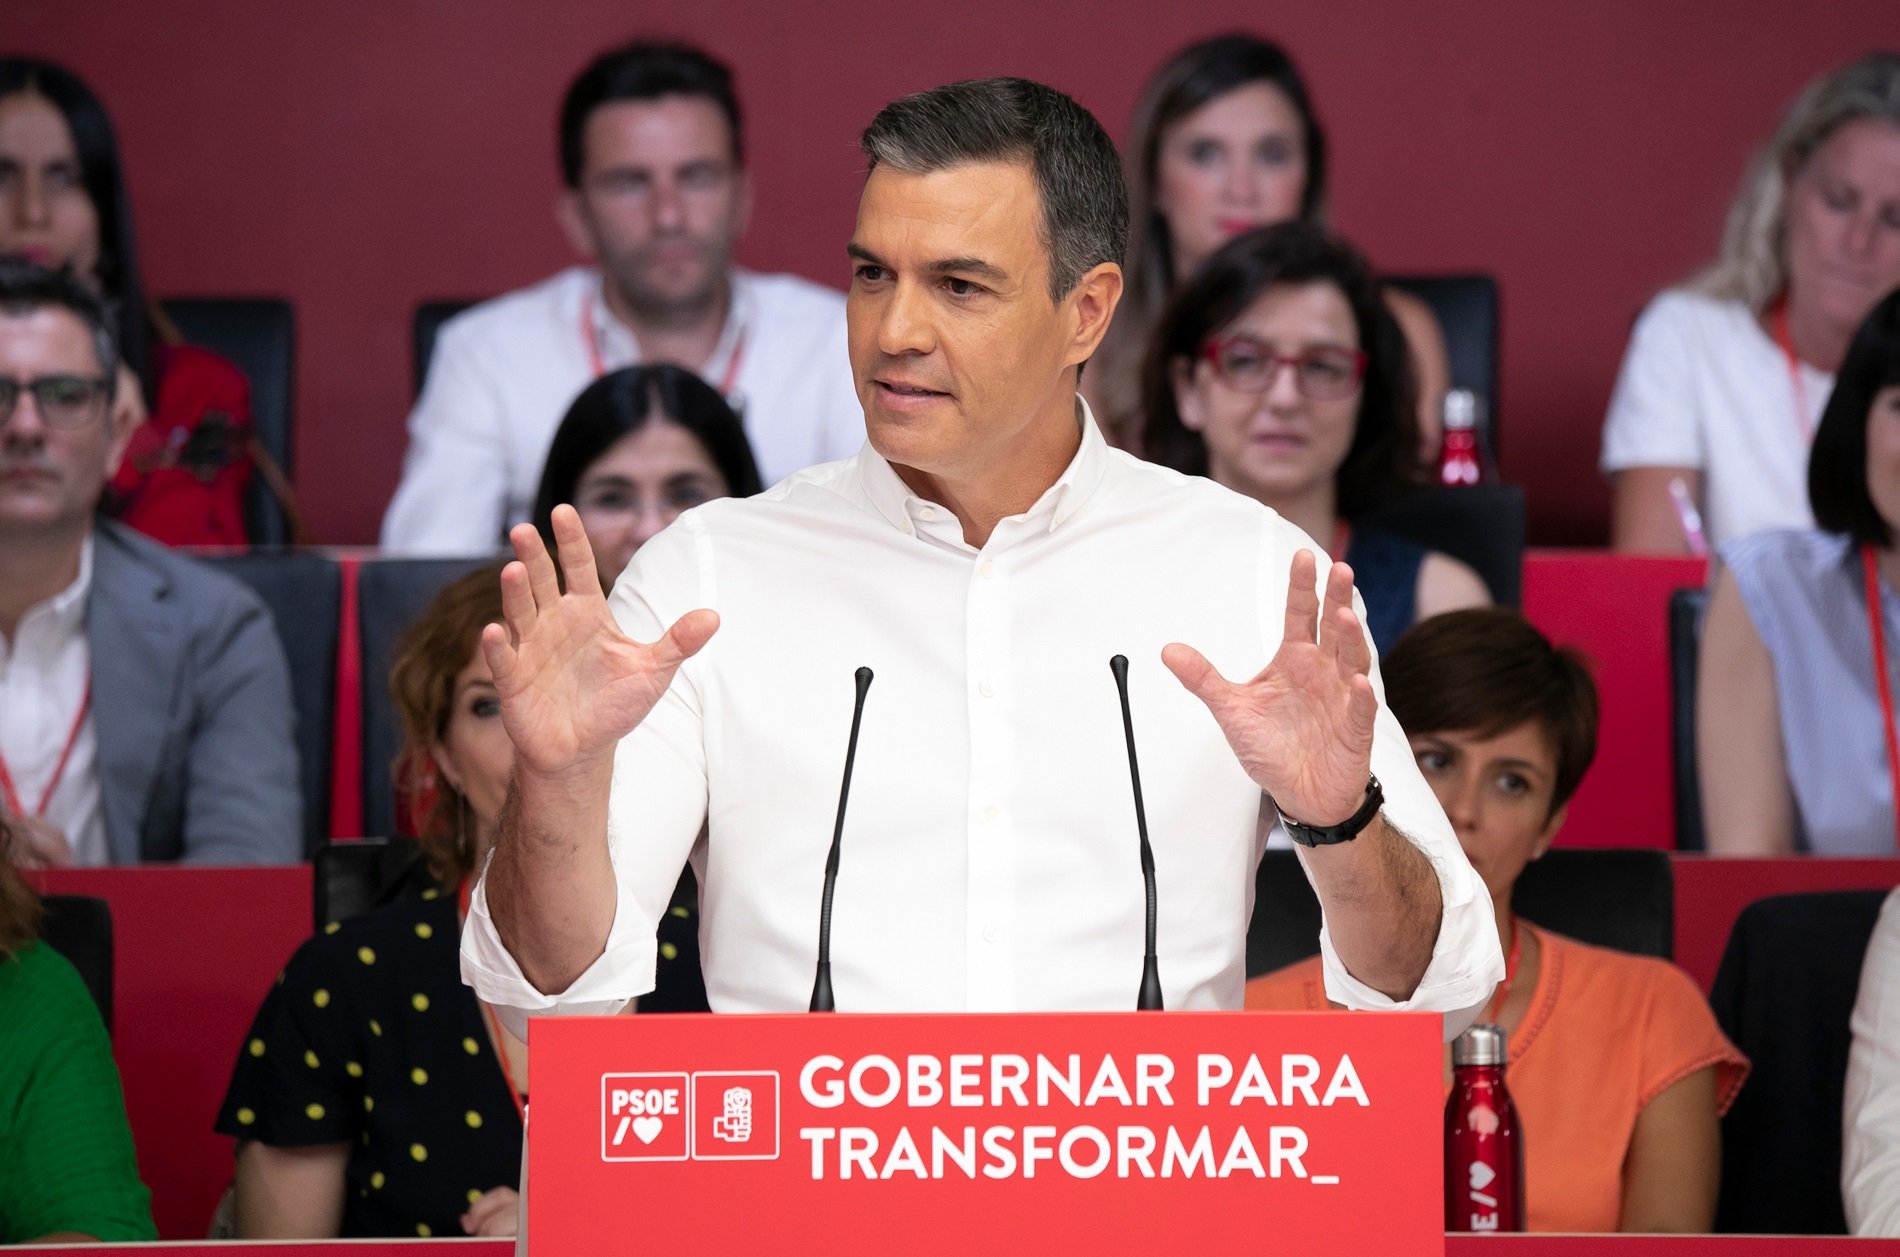 Sánchez apreta la nova direcció del PSOE: "Toca ficar una marxa més per guanyar"